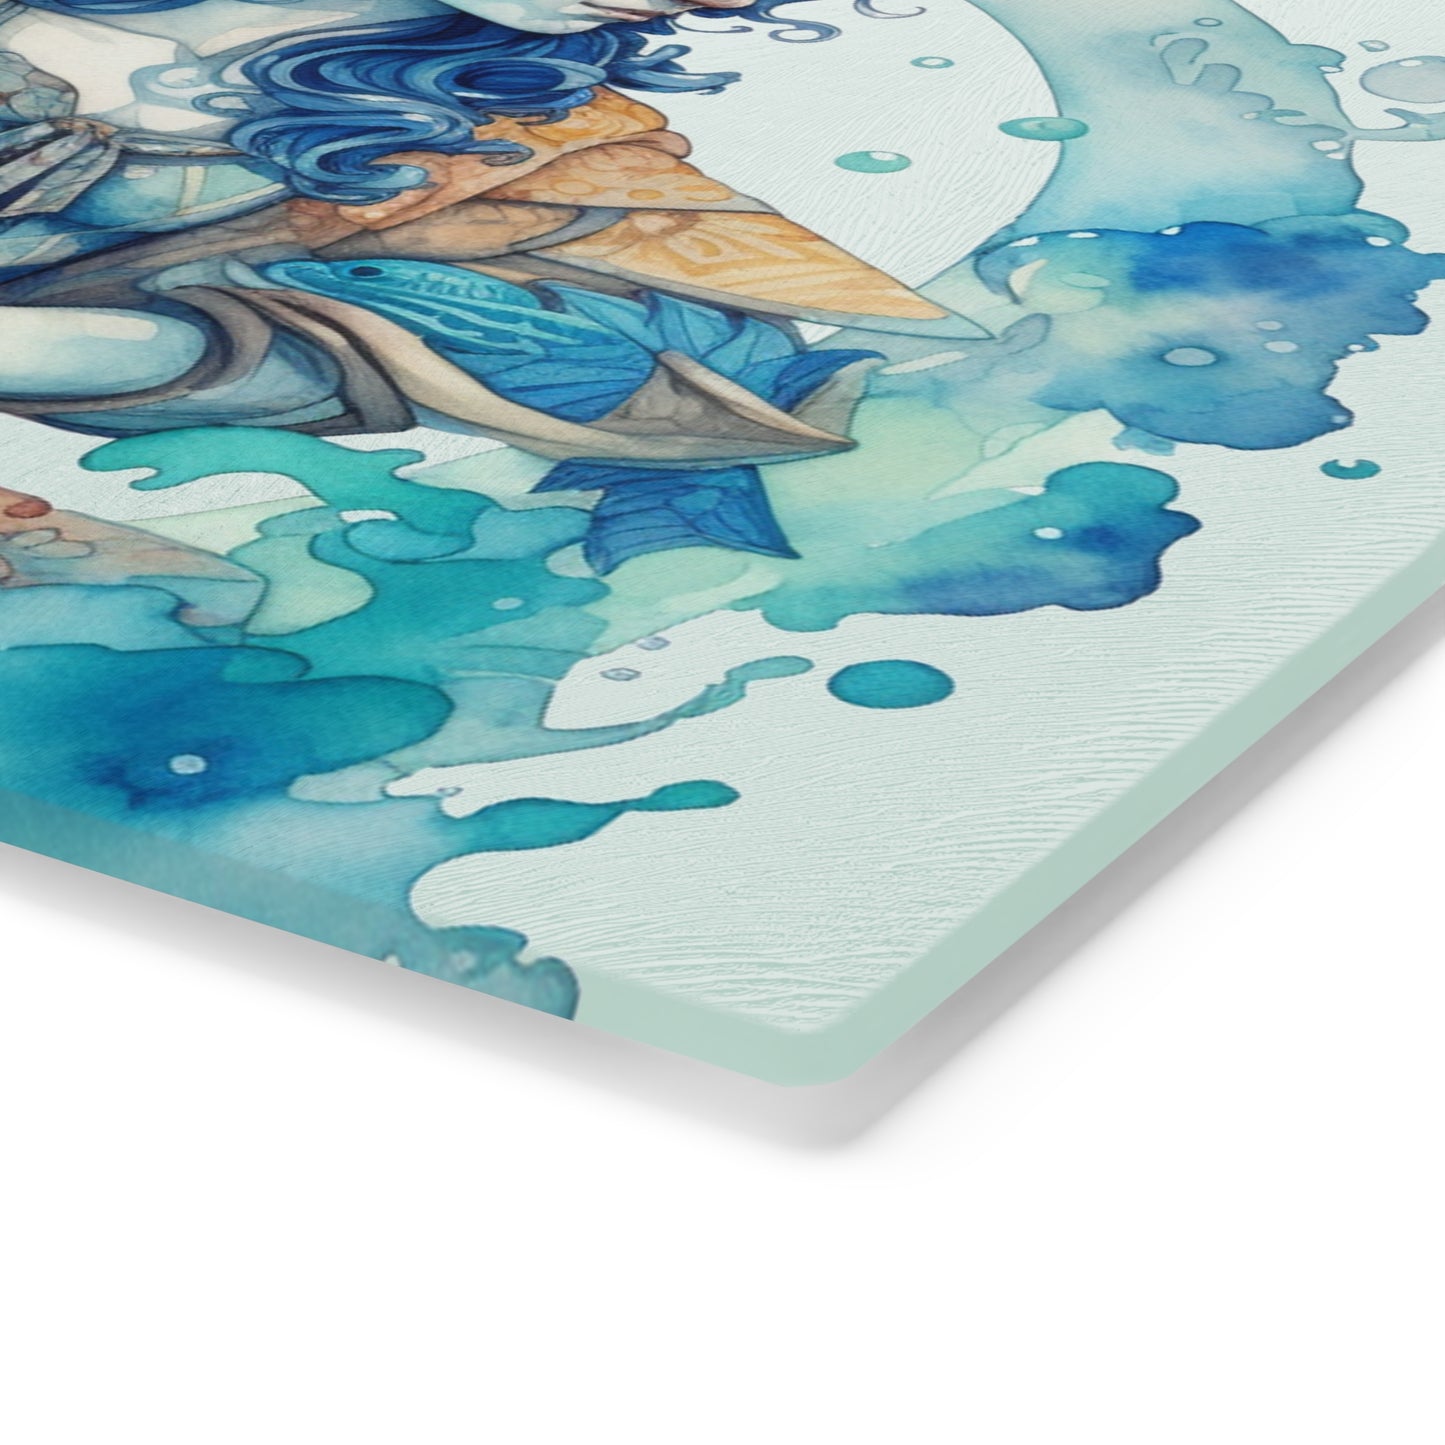 Artistic Aquarius Zodiac - Watercolor Water-Bearer Depiction - Cutting Board